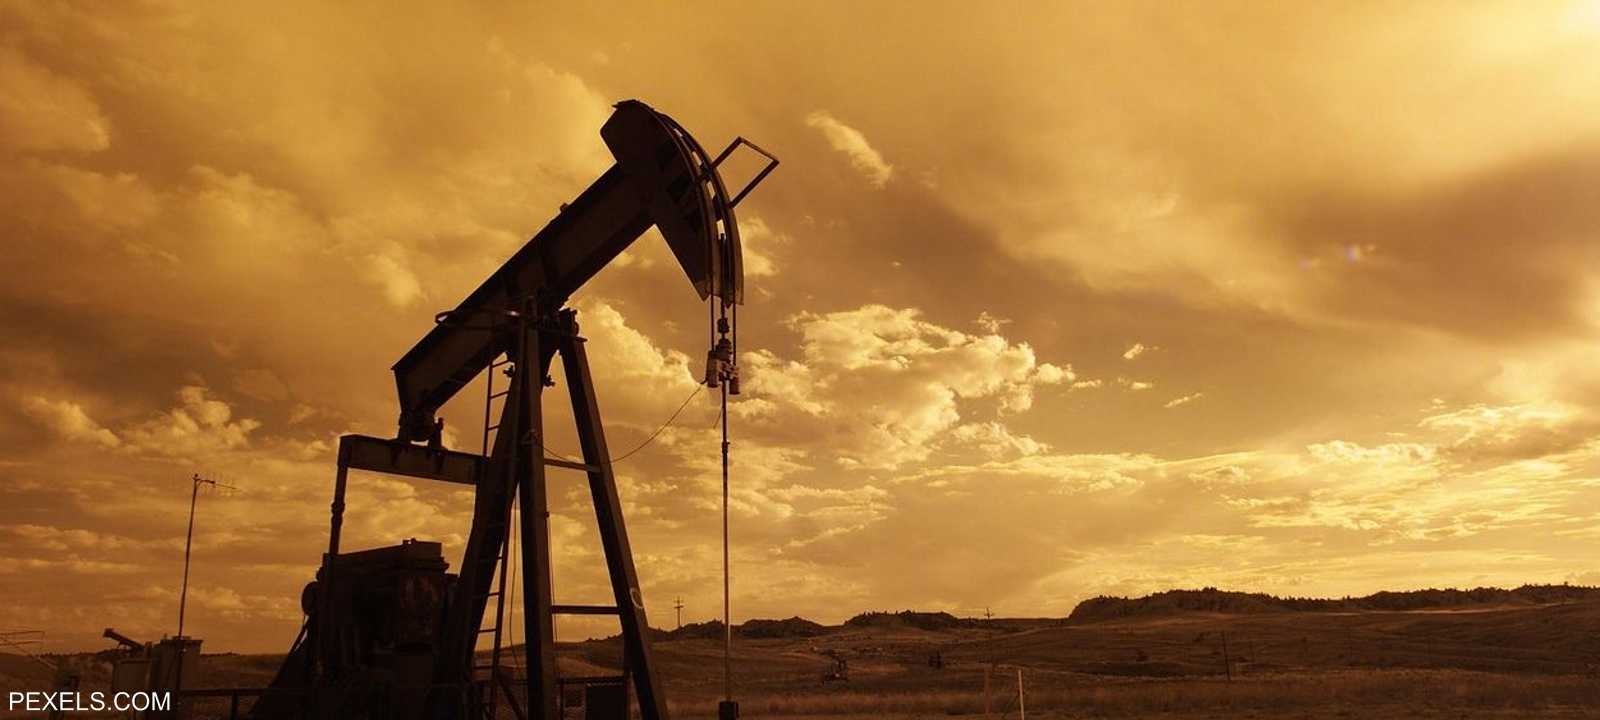 تداعيات كورونا لا تزال تلقي بظلالها على أسعار النفط.